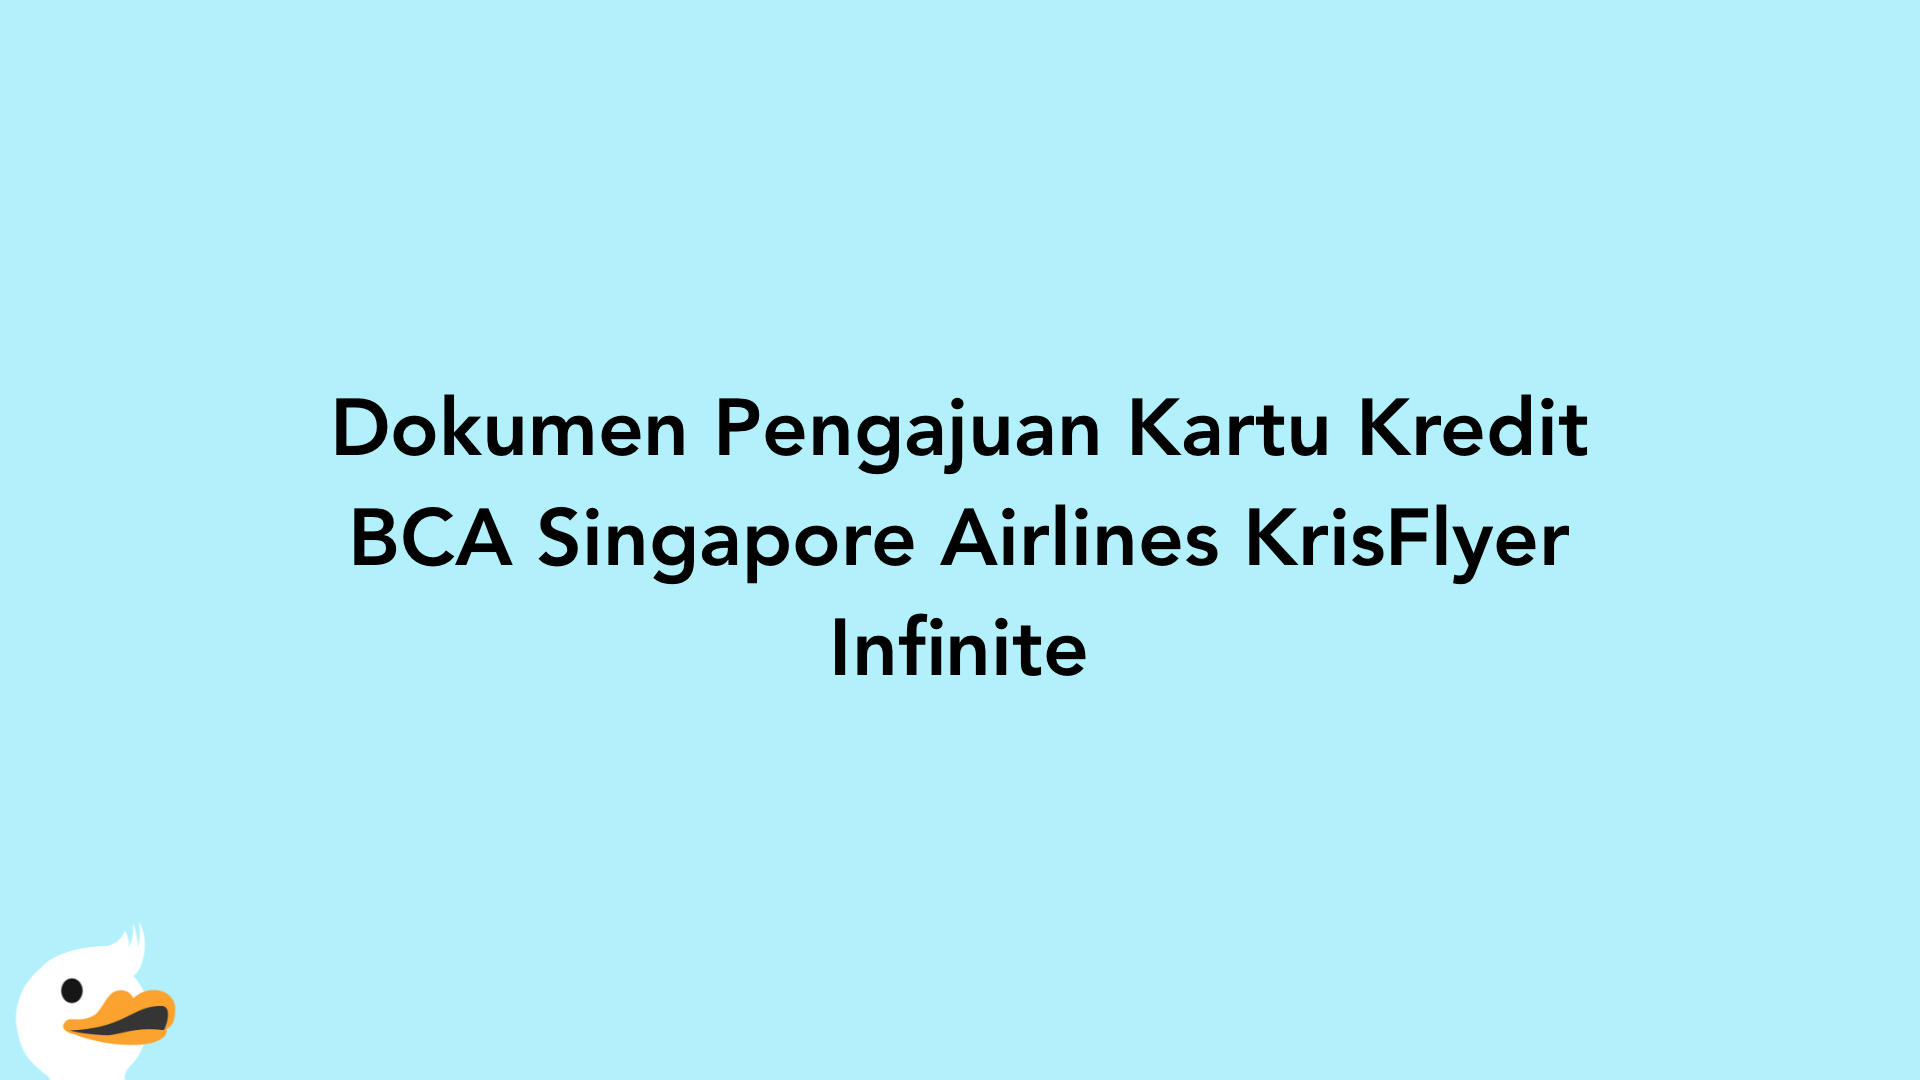 Dokumen Pengajuan Kartu Kredit BCA Singapore Airlines KrisFlyer Infinite